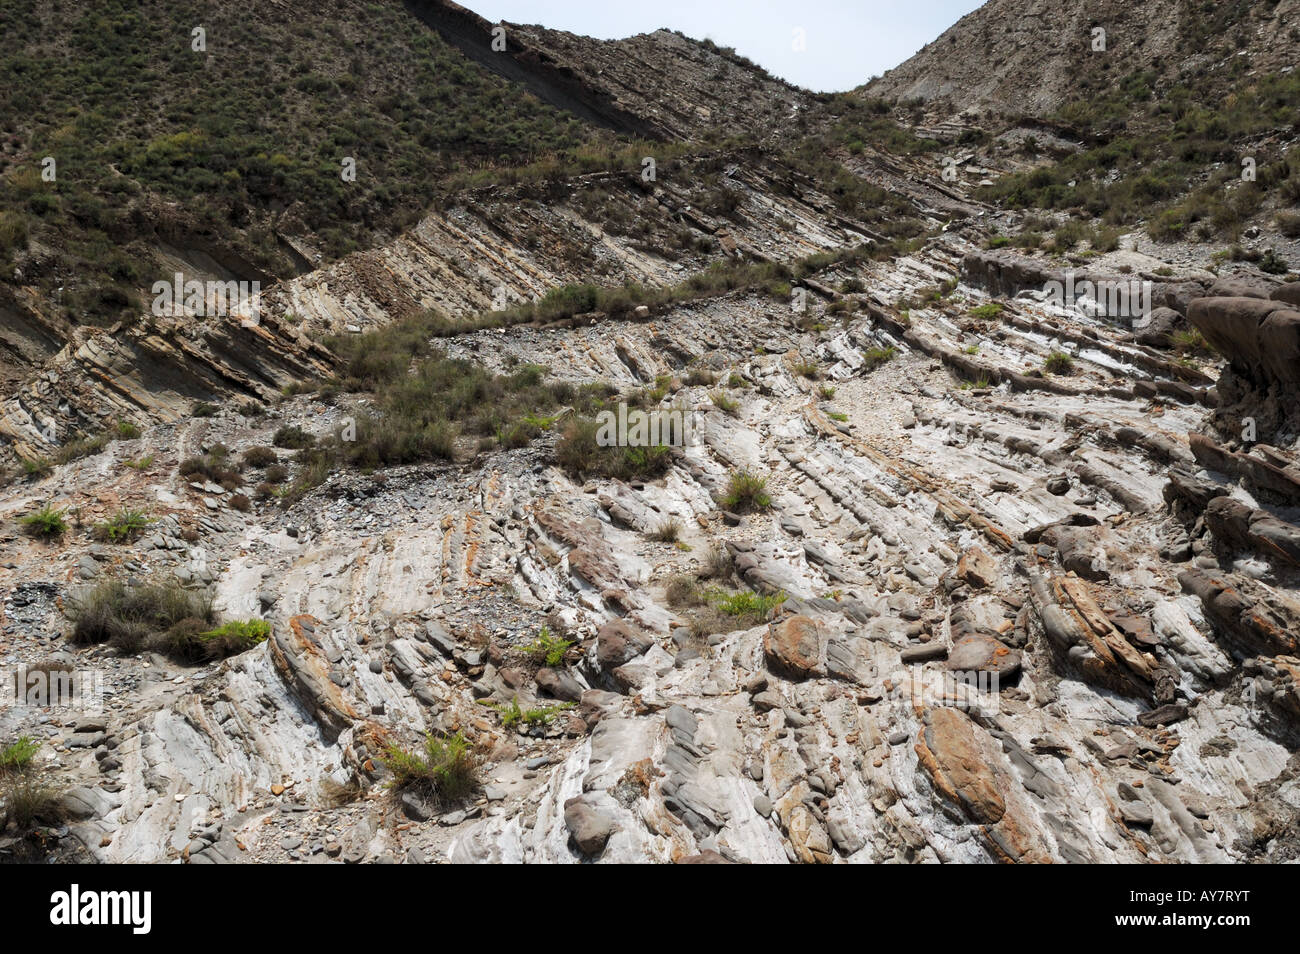 Letti sottile di arenaria e di scisto in una sequenza turbidite. Il sud della Spagna. Foto Stock